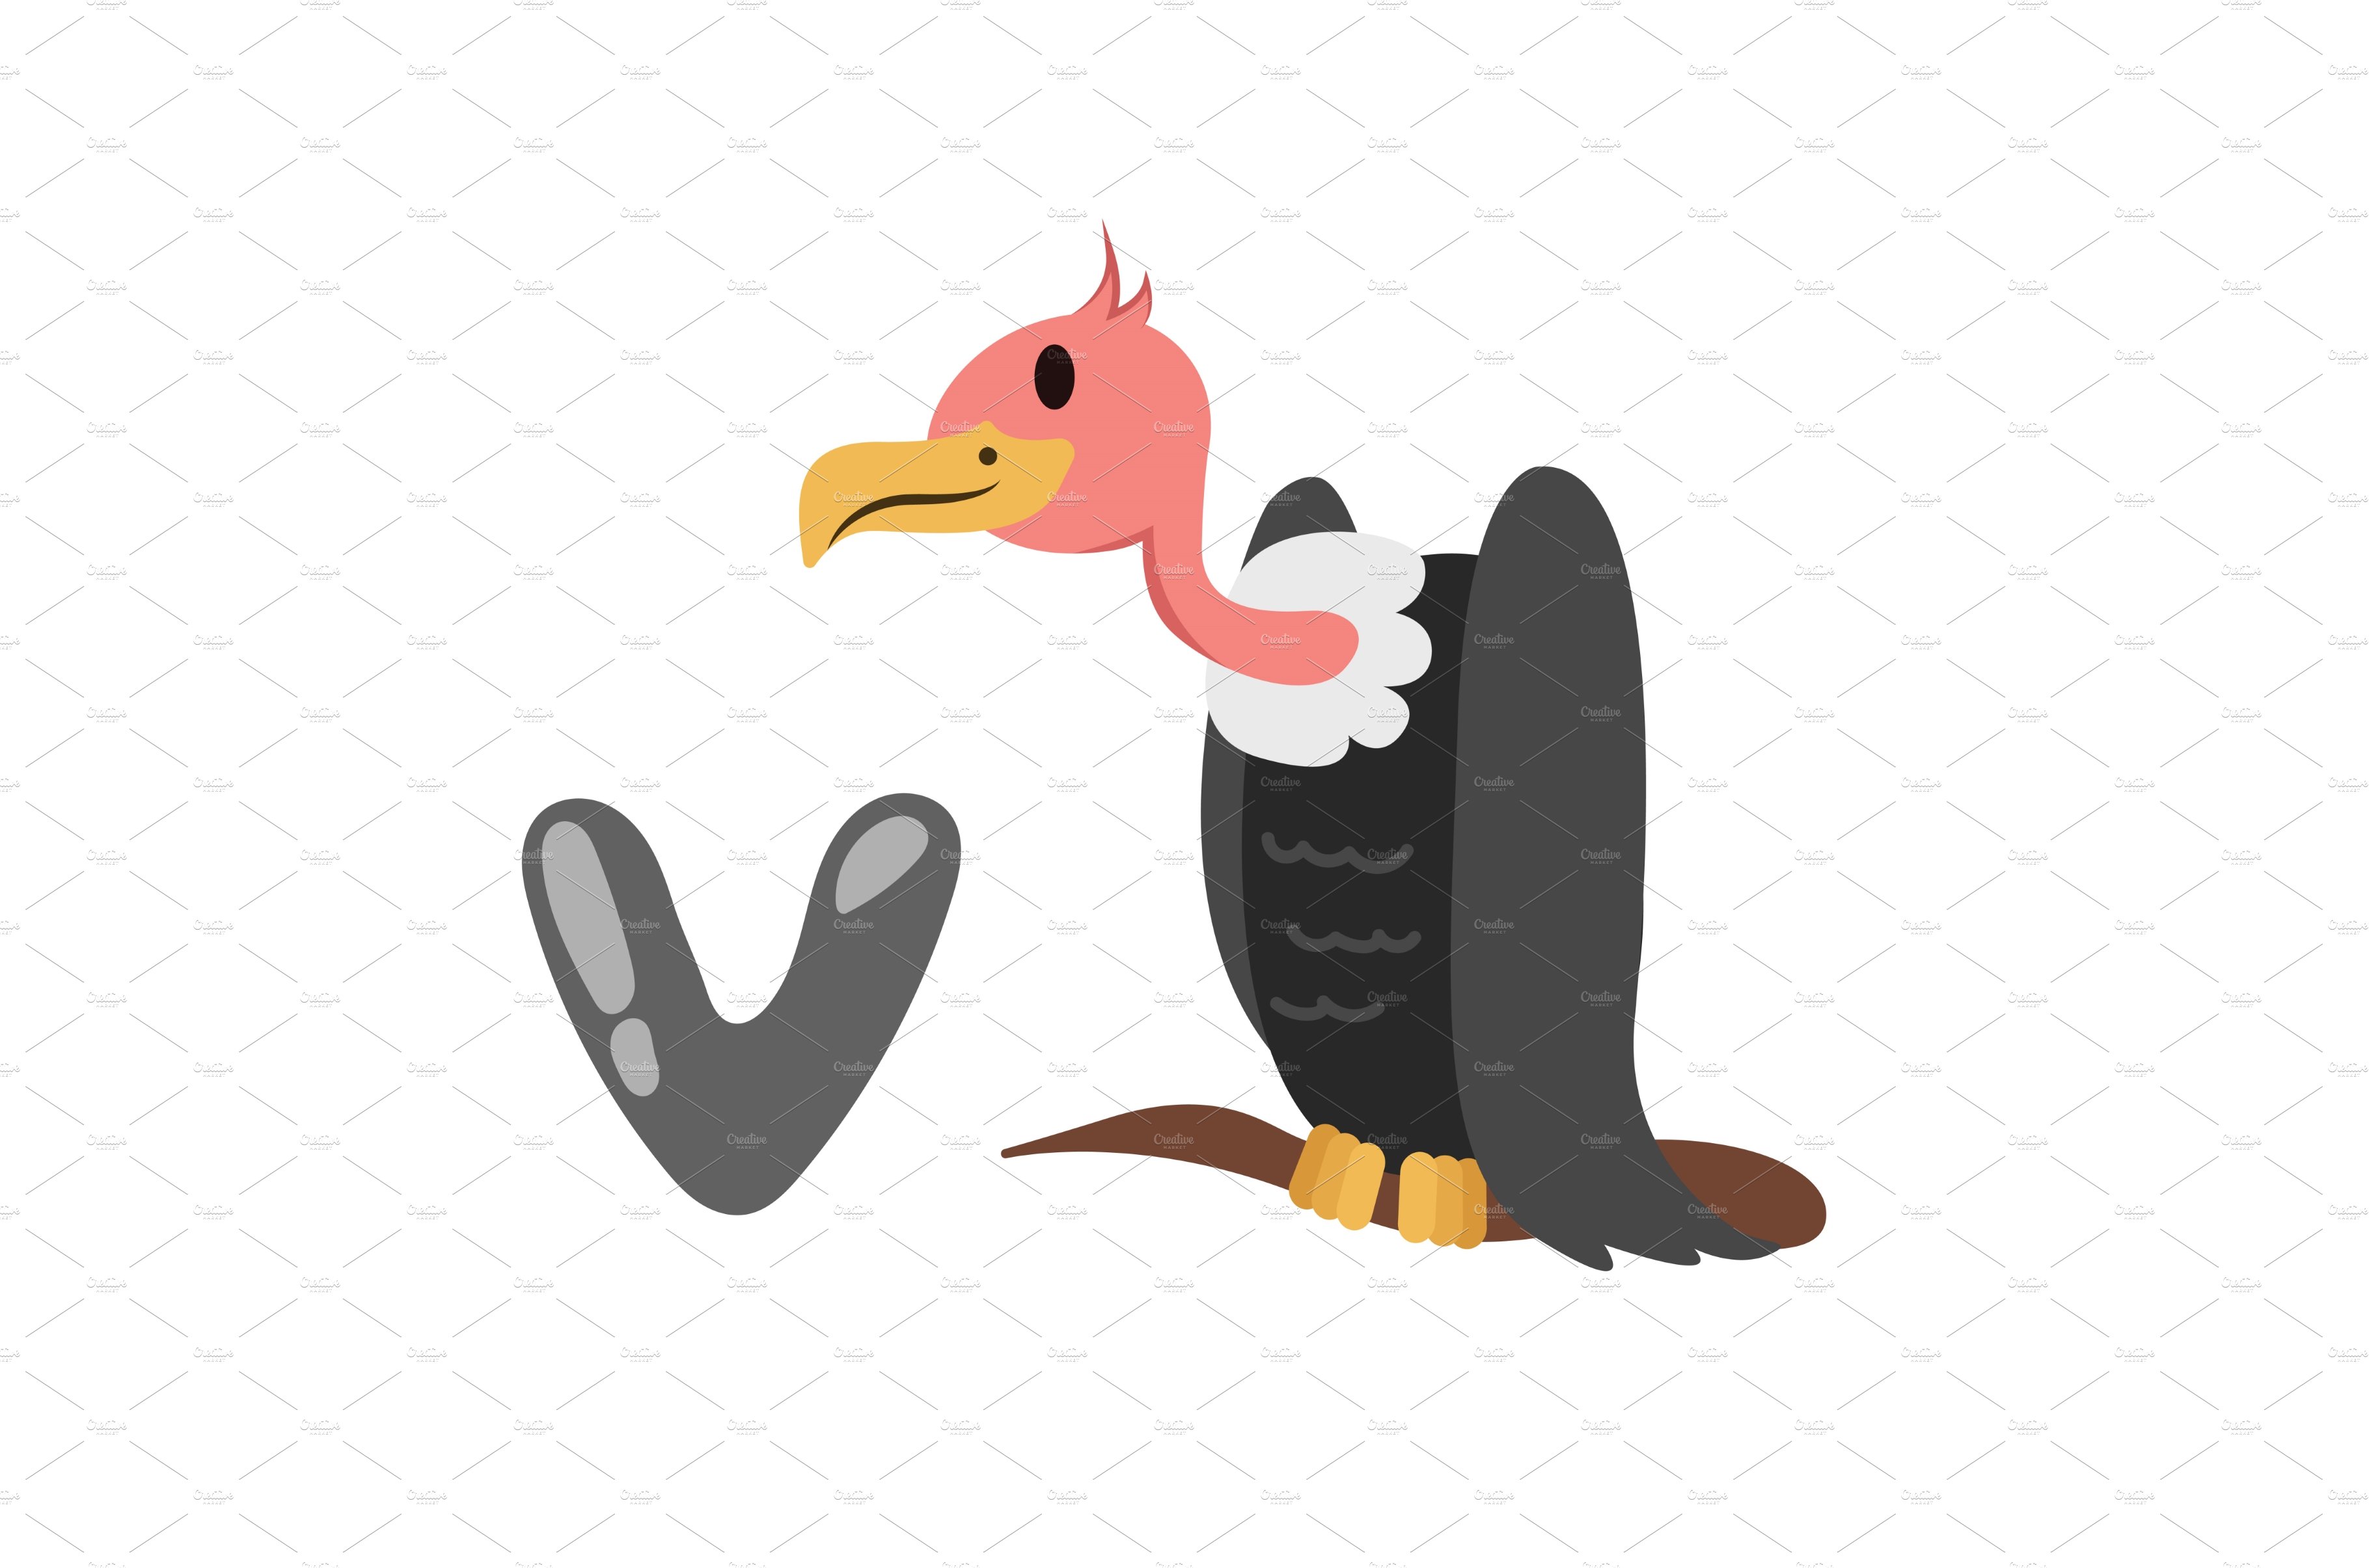 Concept Alphabet V vulture bird cover image.